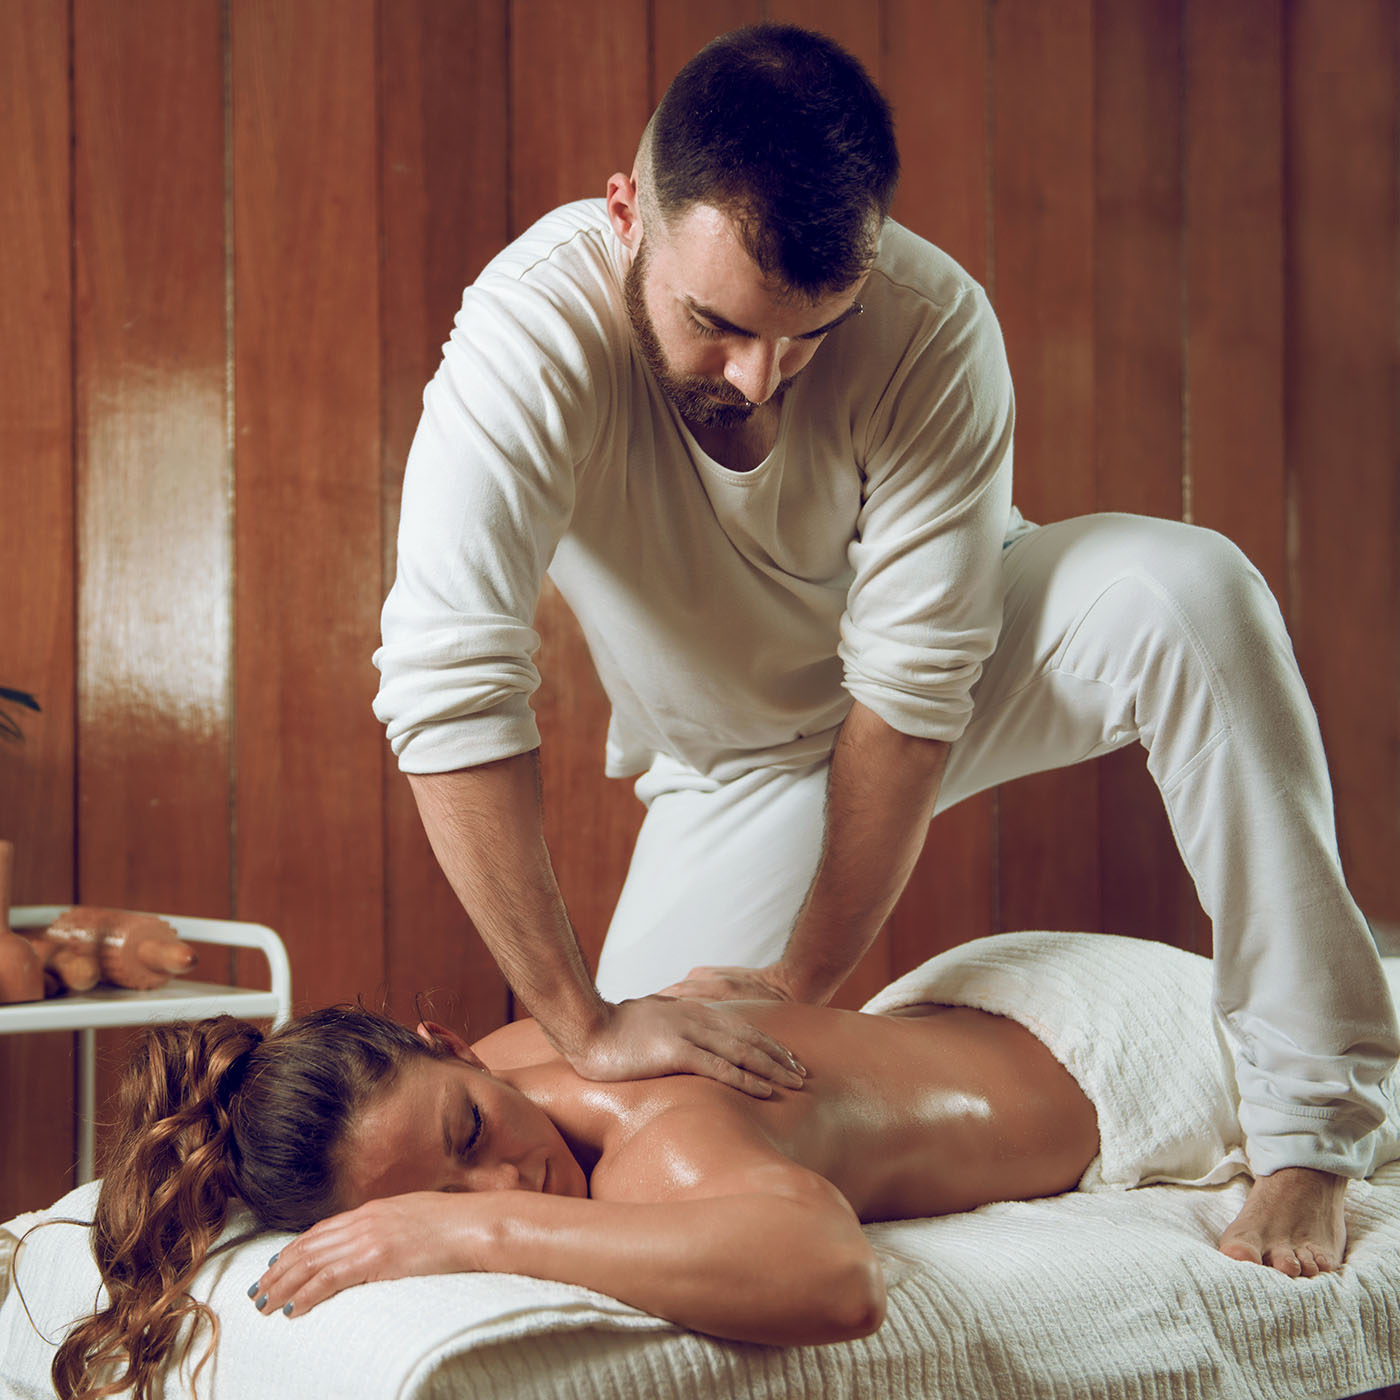 relaxing-back-massage-2022-03-30-20-23-41-utc.jpg